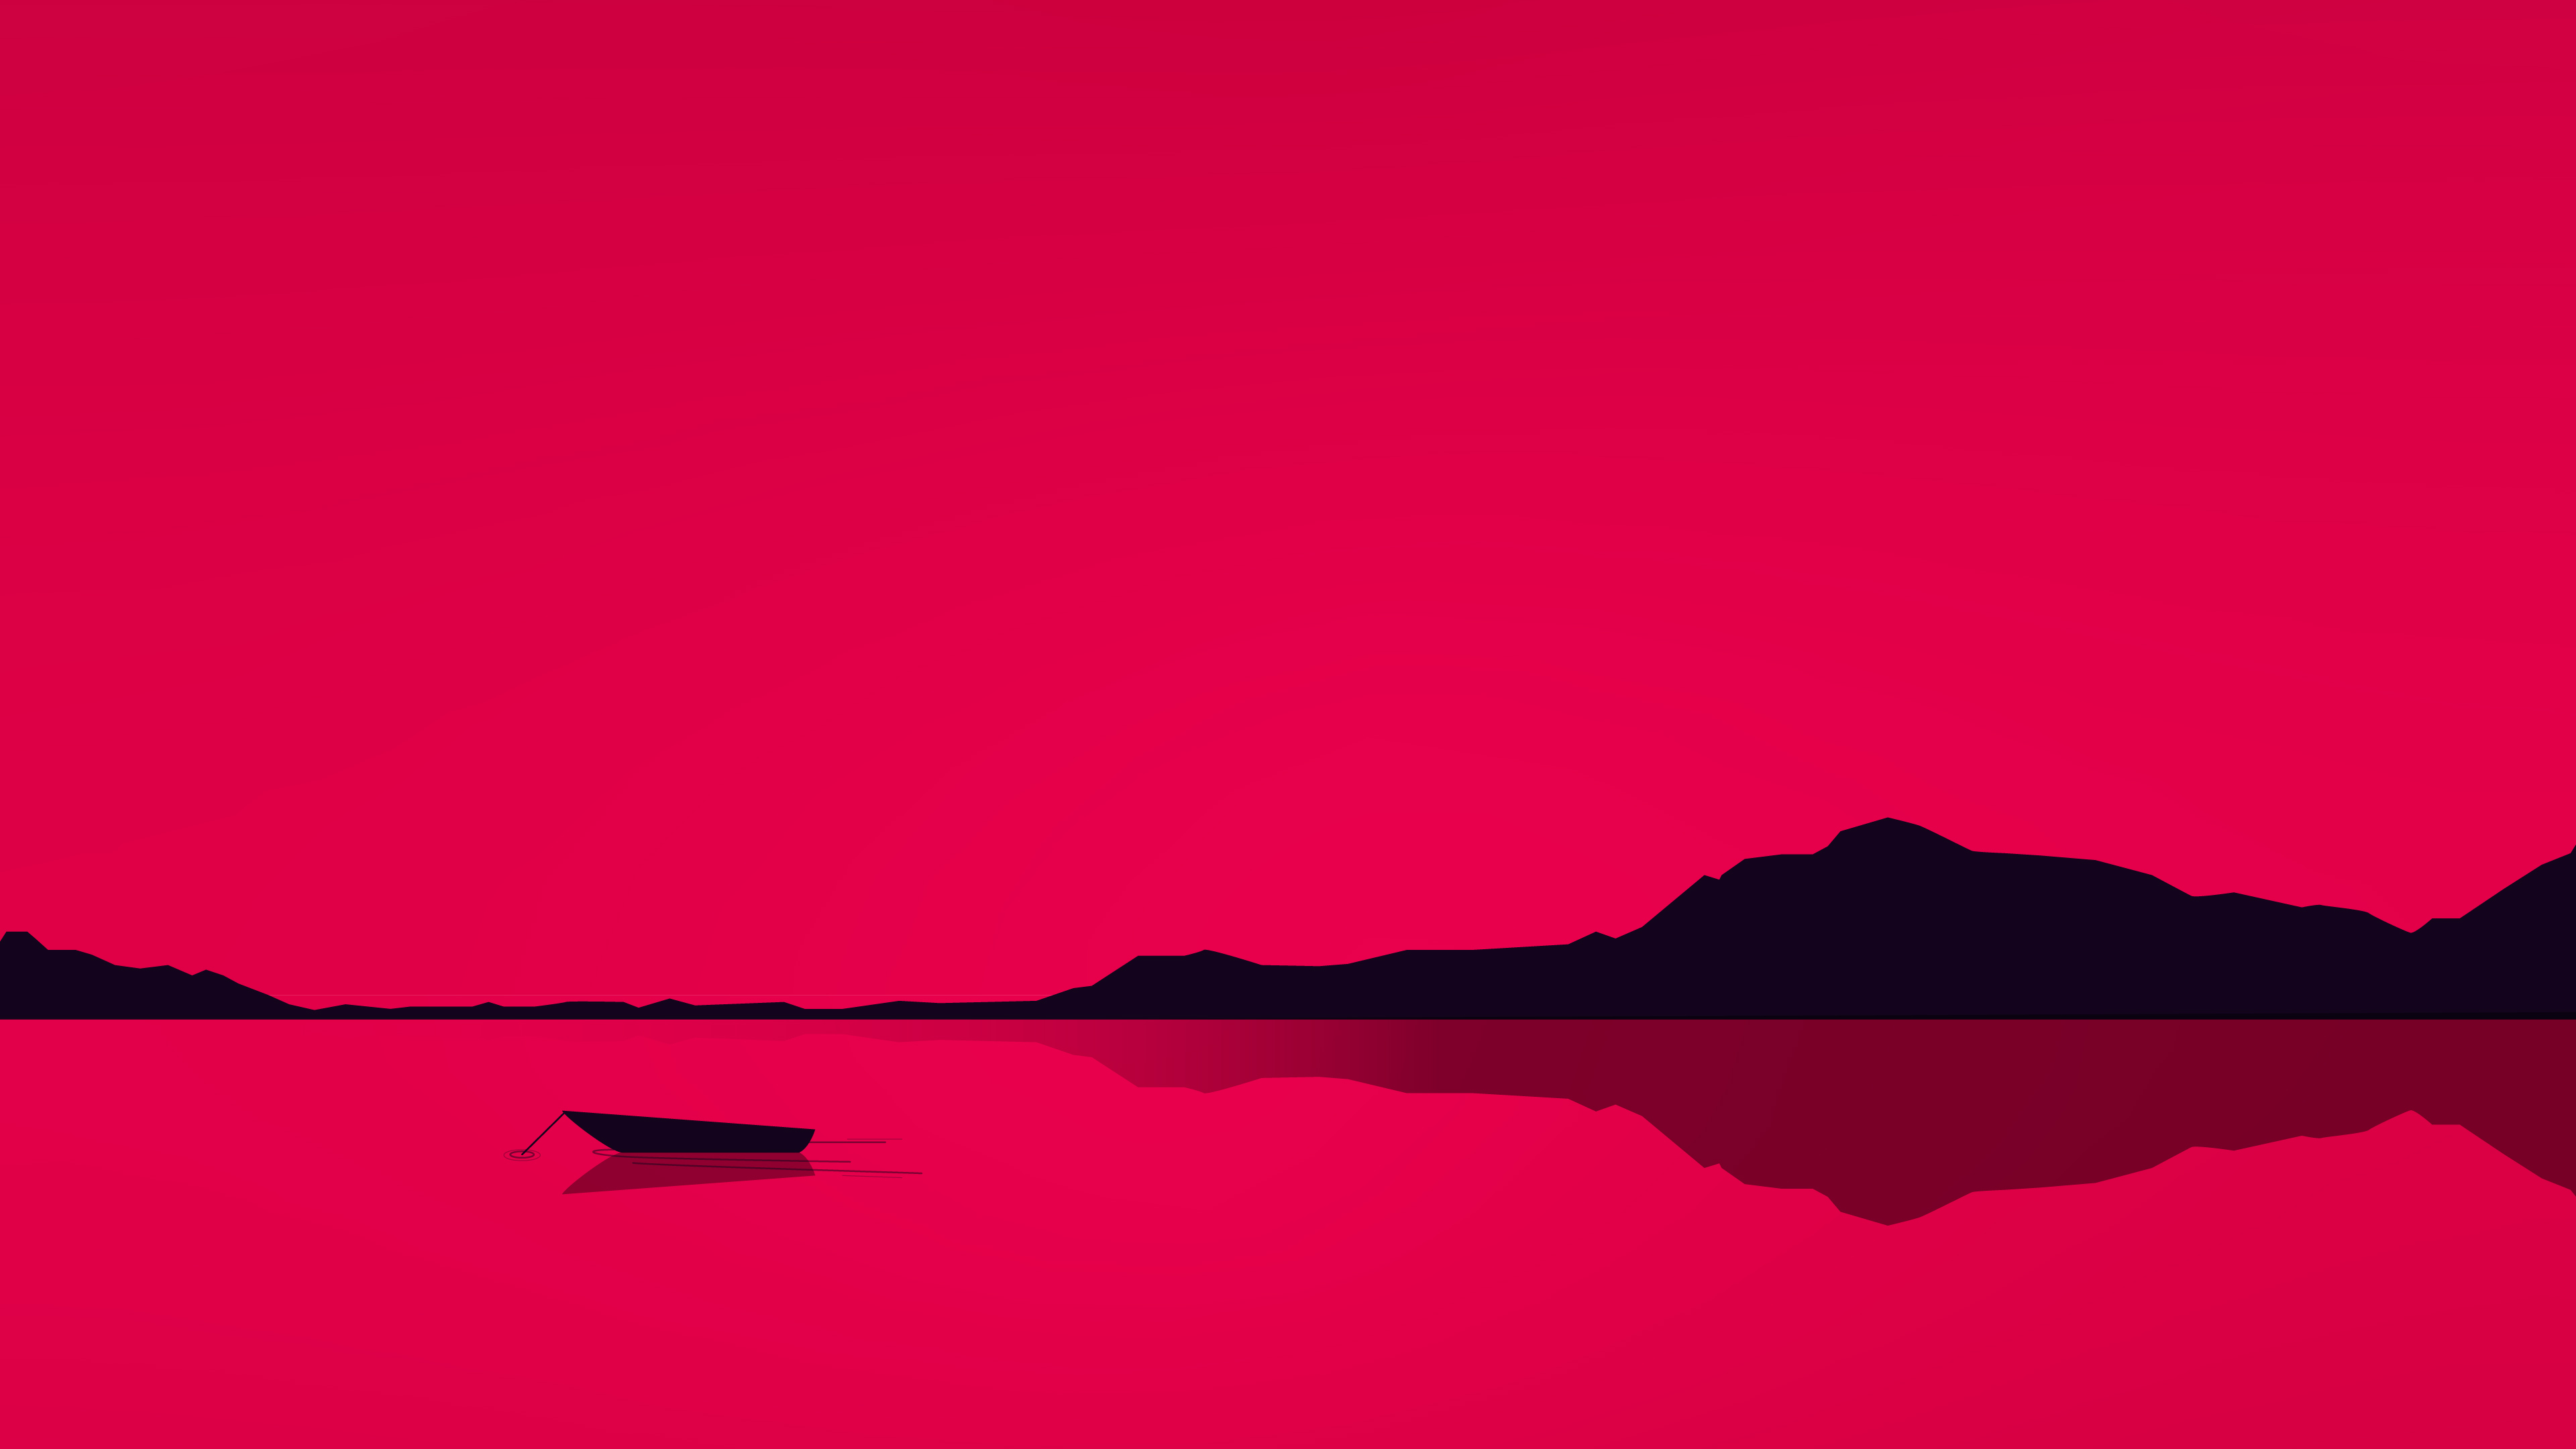 Hồ đỏ tối giản mang đến sự thanh thản và yên bình cho không gian của bạn. Khi xem ảnh liên quan, bạn sẽ nhận thấy rằng những tông màu đỏ trông rất nổi bật và đặc biệt. Với thiết kế đầy tinh tế, hình ảnh chắc chắn sẽ tạo được ấn tượng với người xem. Hãy truy cập ngay để chiêm ngưỡng những hình ảnh đầy nghệ thuật này!